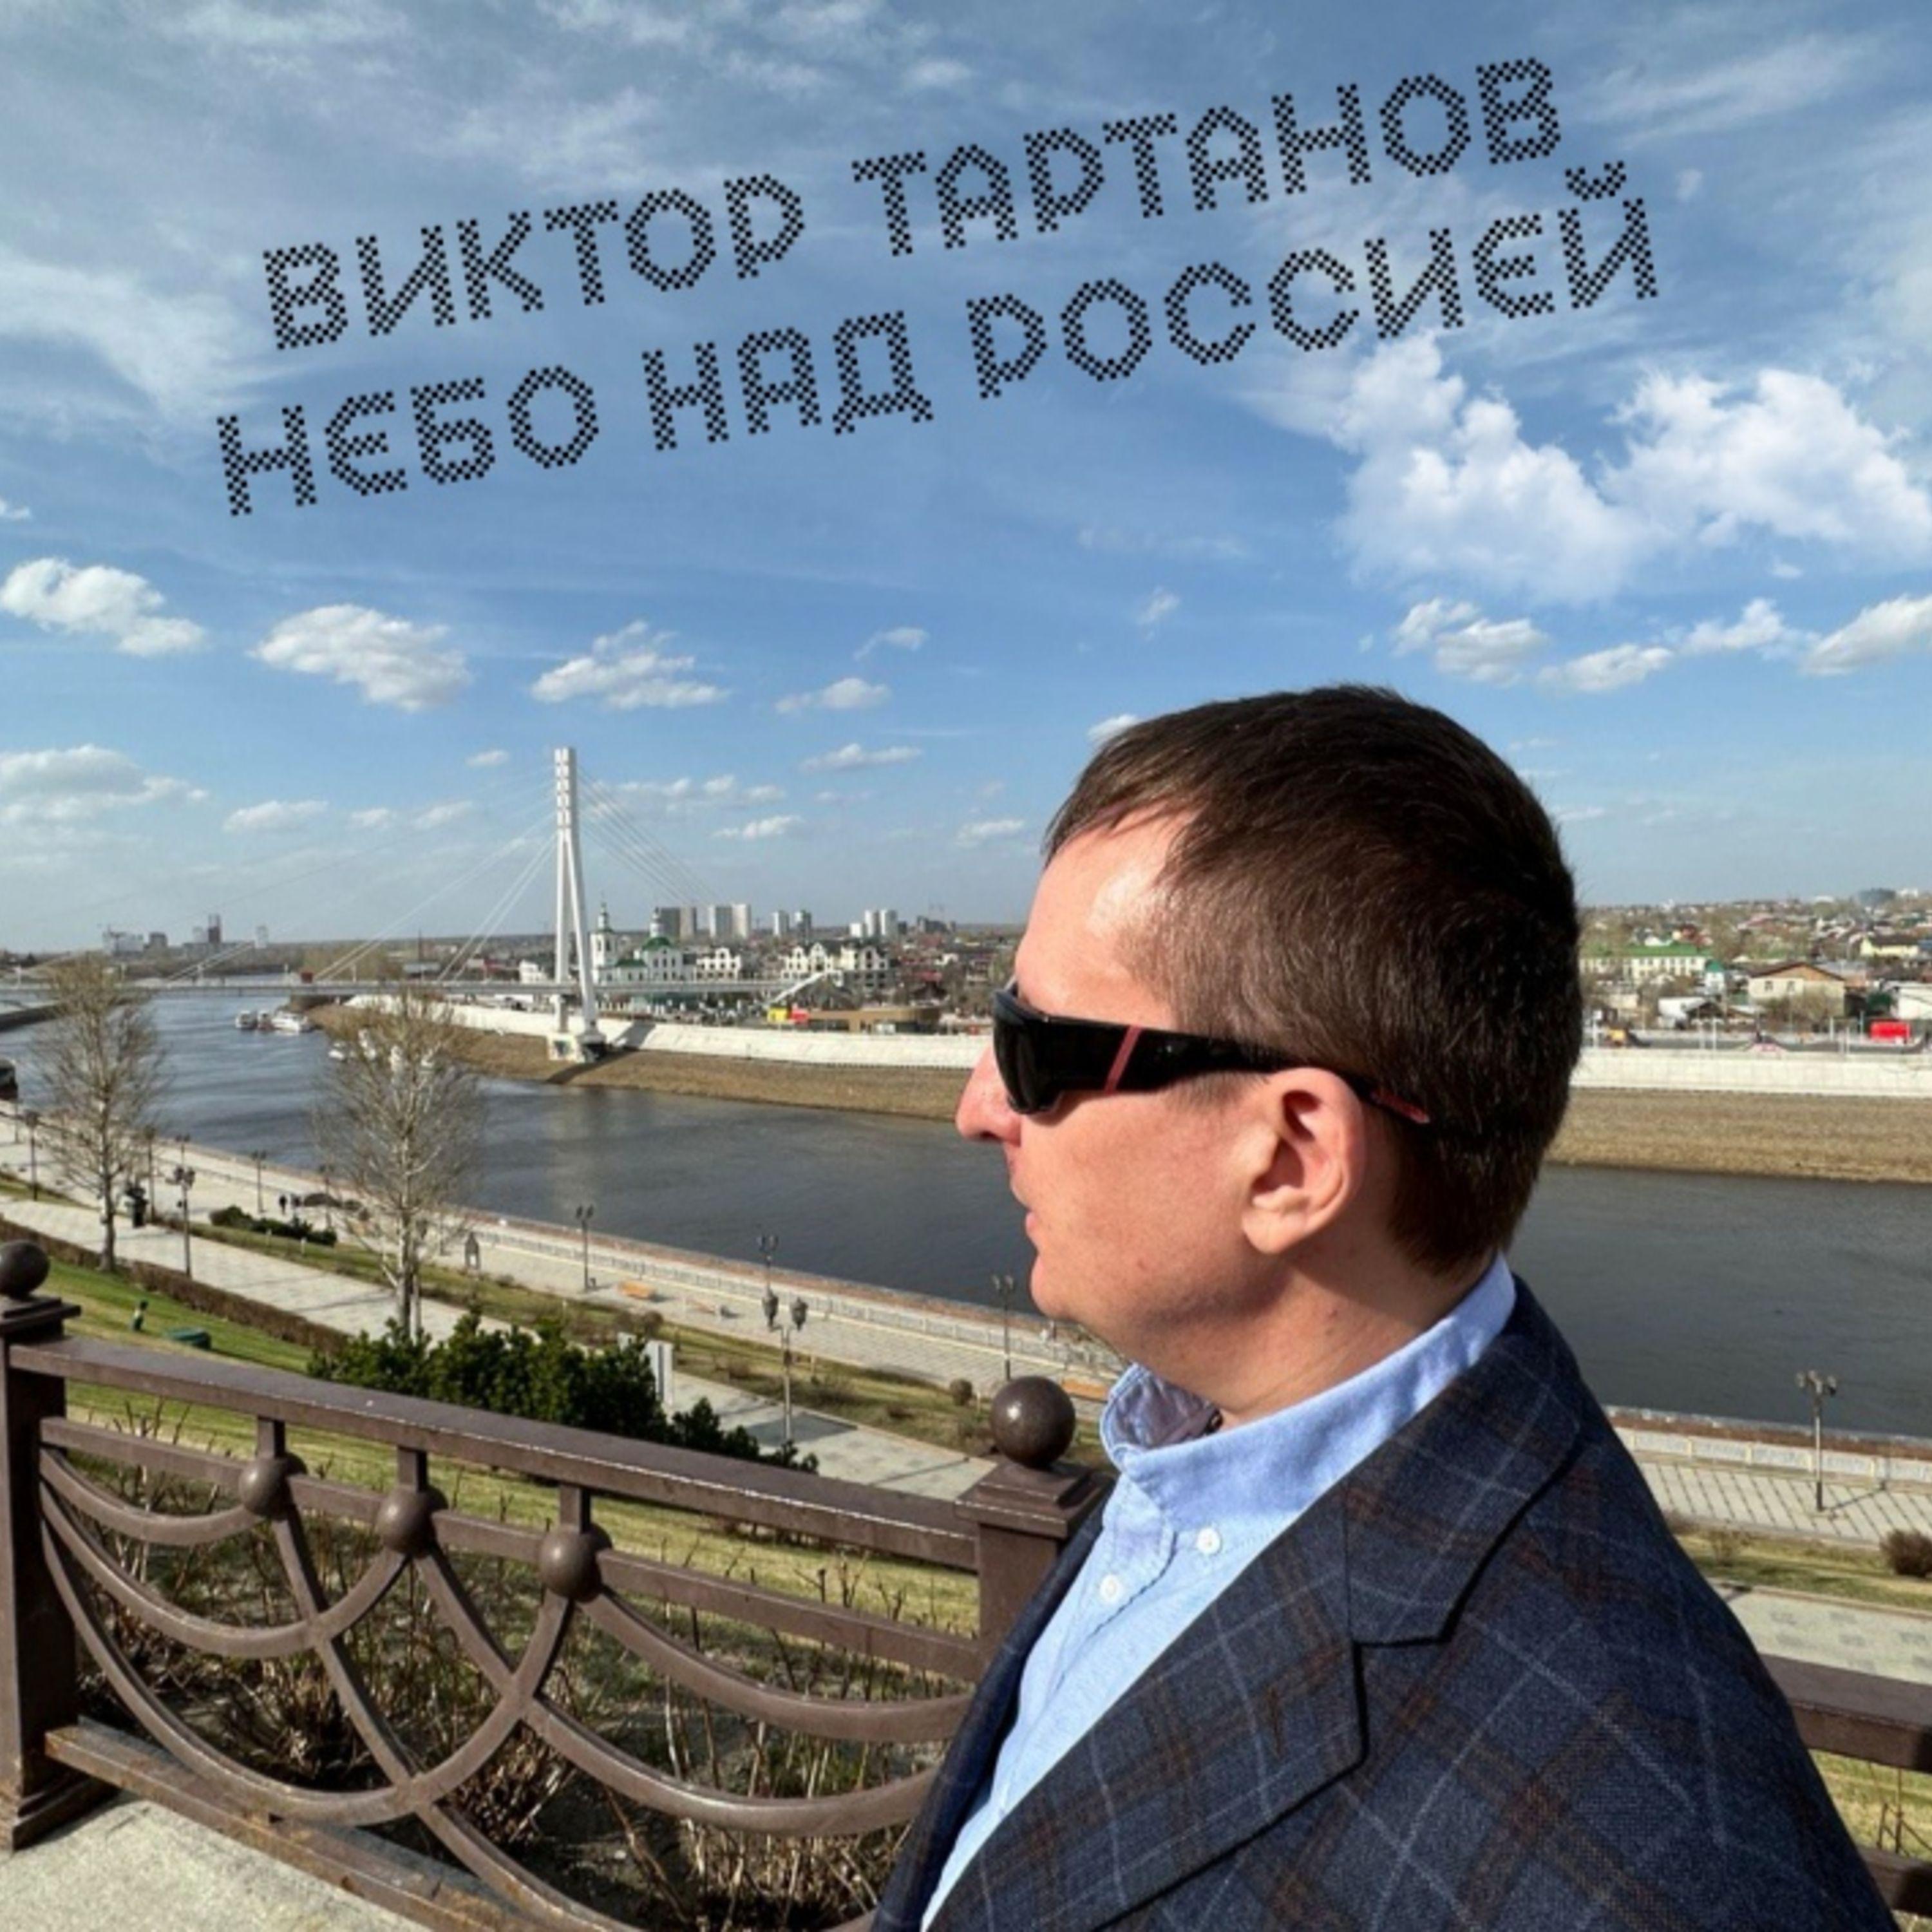 Постер альбома Небо над Россией